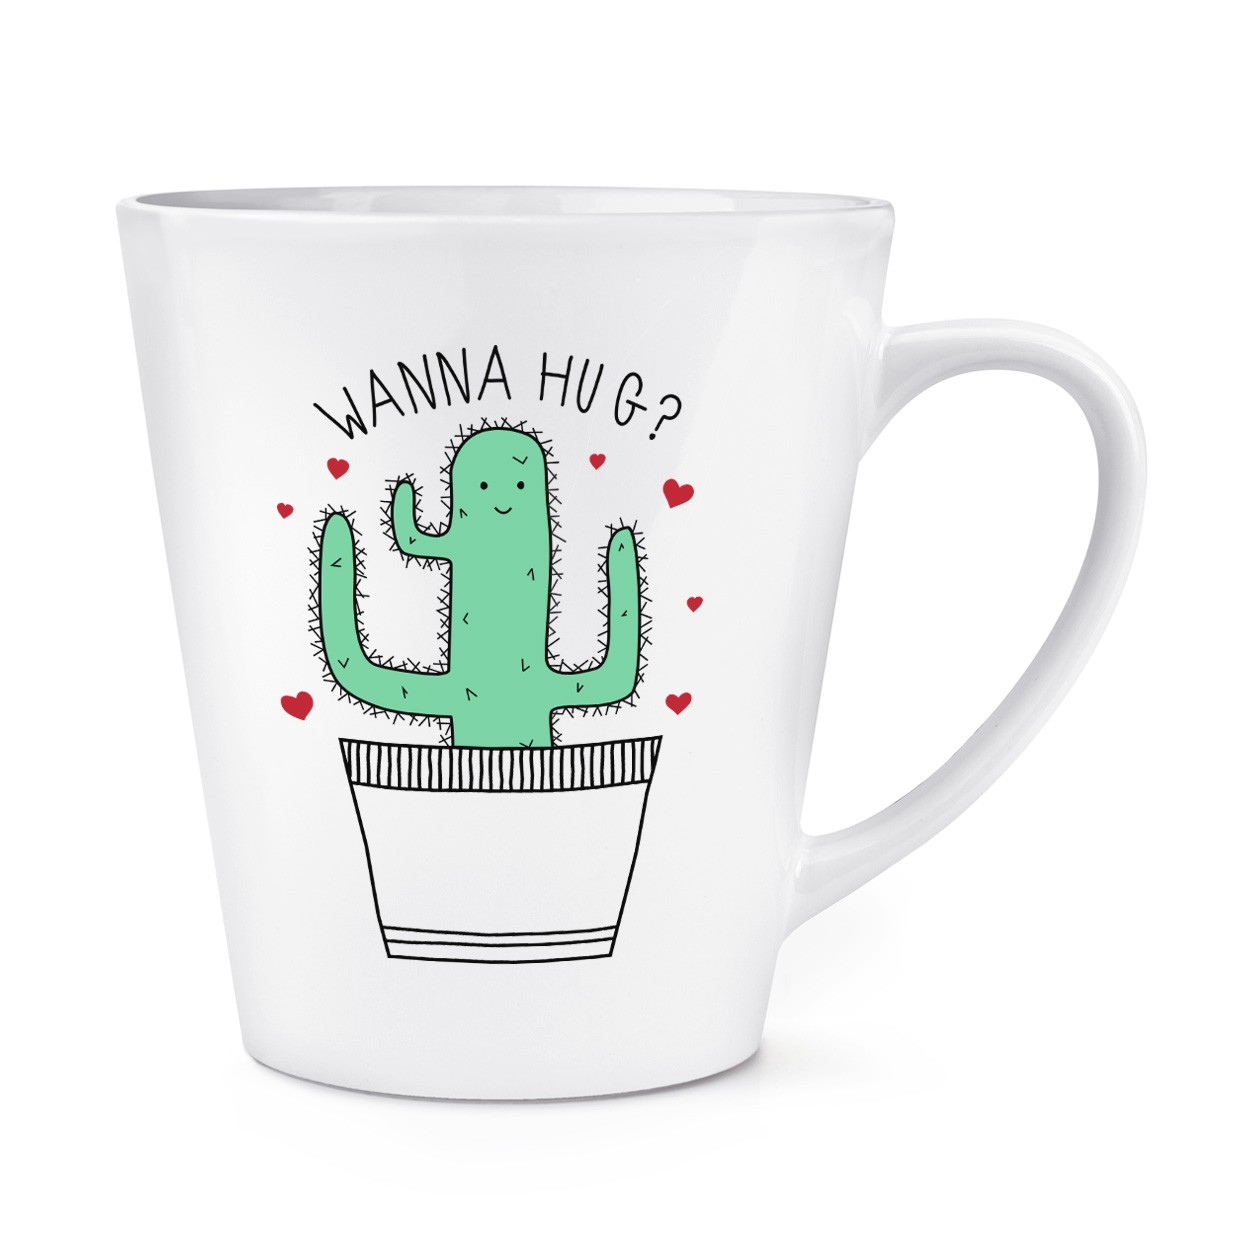 Cactus Wanna Hug 12oz Latte Mug Cup